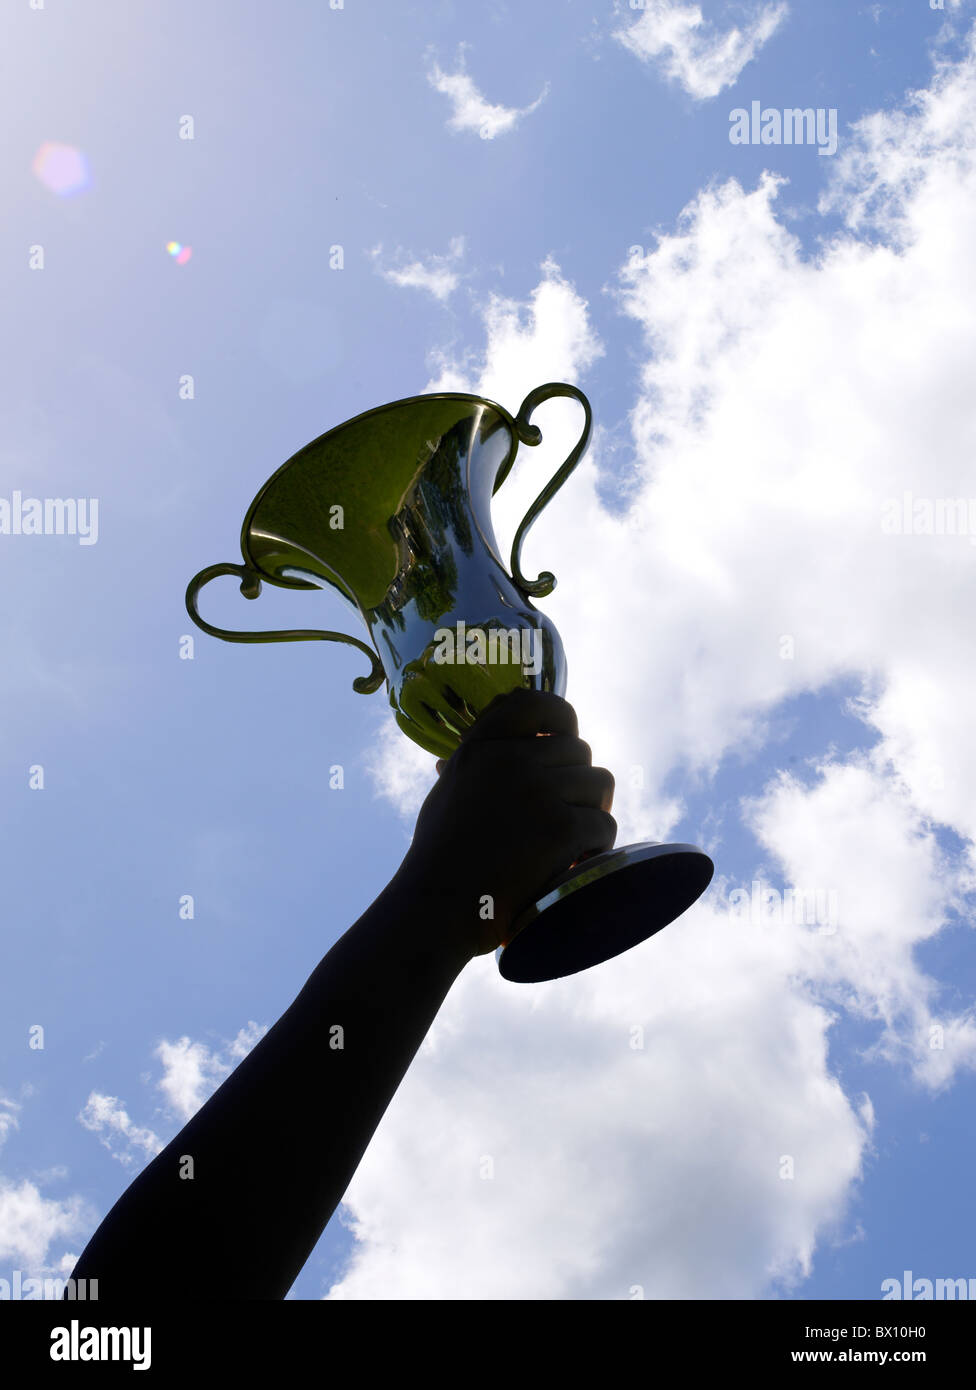 Eine siegreiche Person hält einen großen, glänzenden Trophäenbecher hoch, der sich vor einem leuchtend blauen Himmel mit ein paar Wolken bildet. Stockfoto